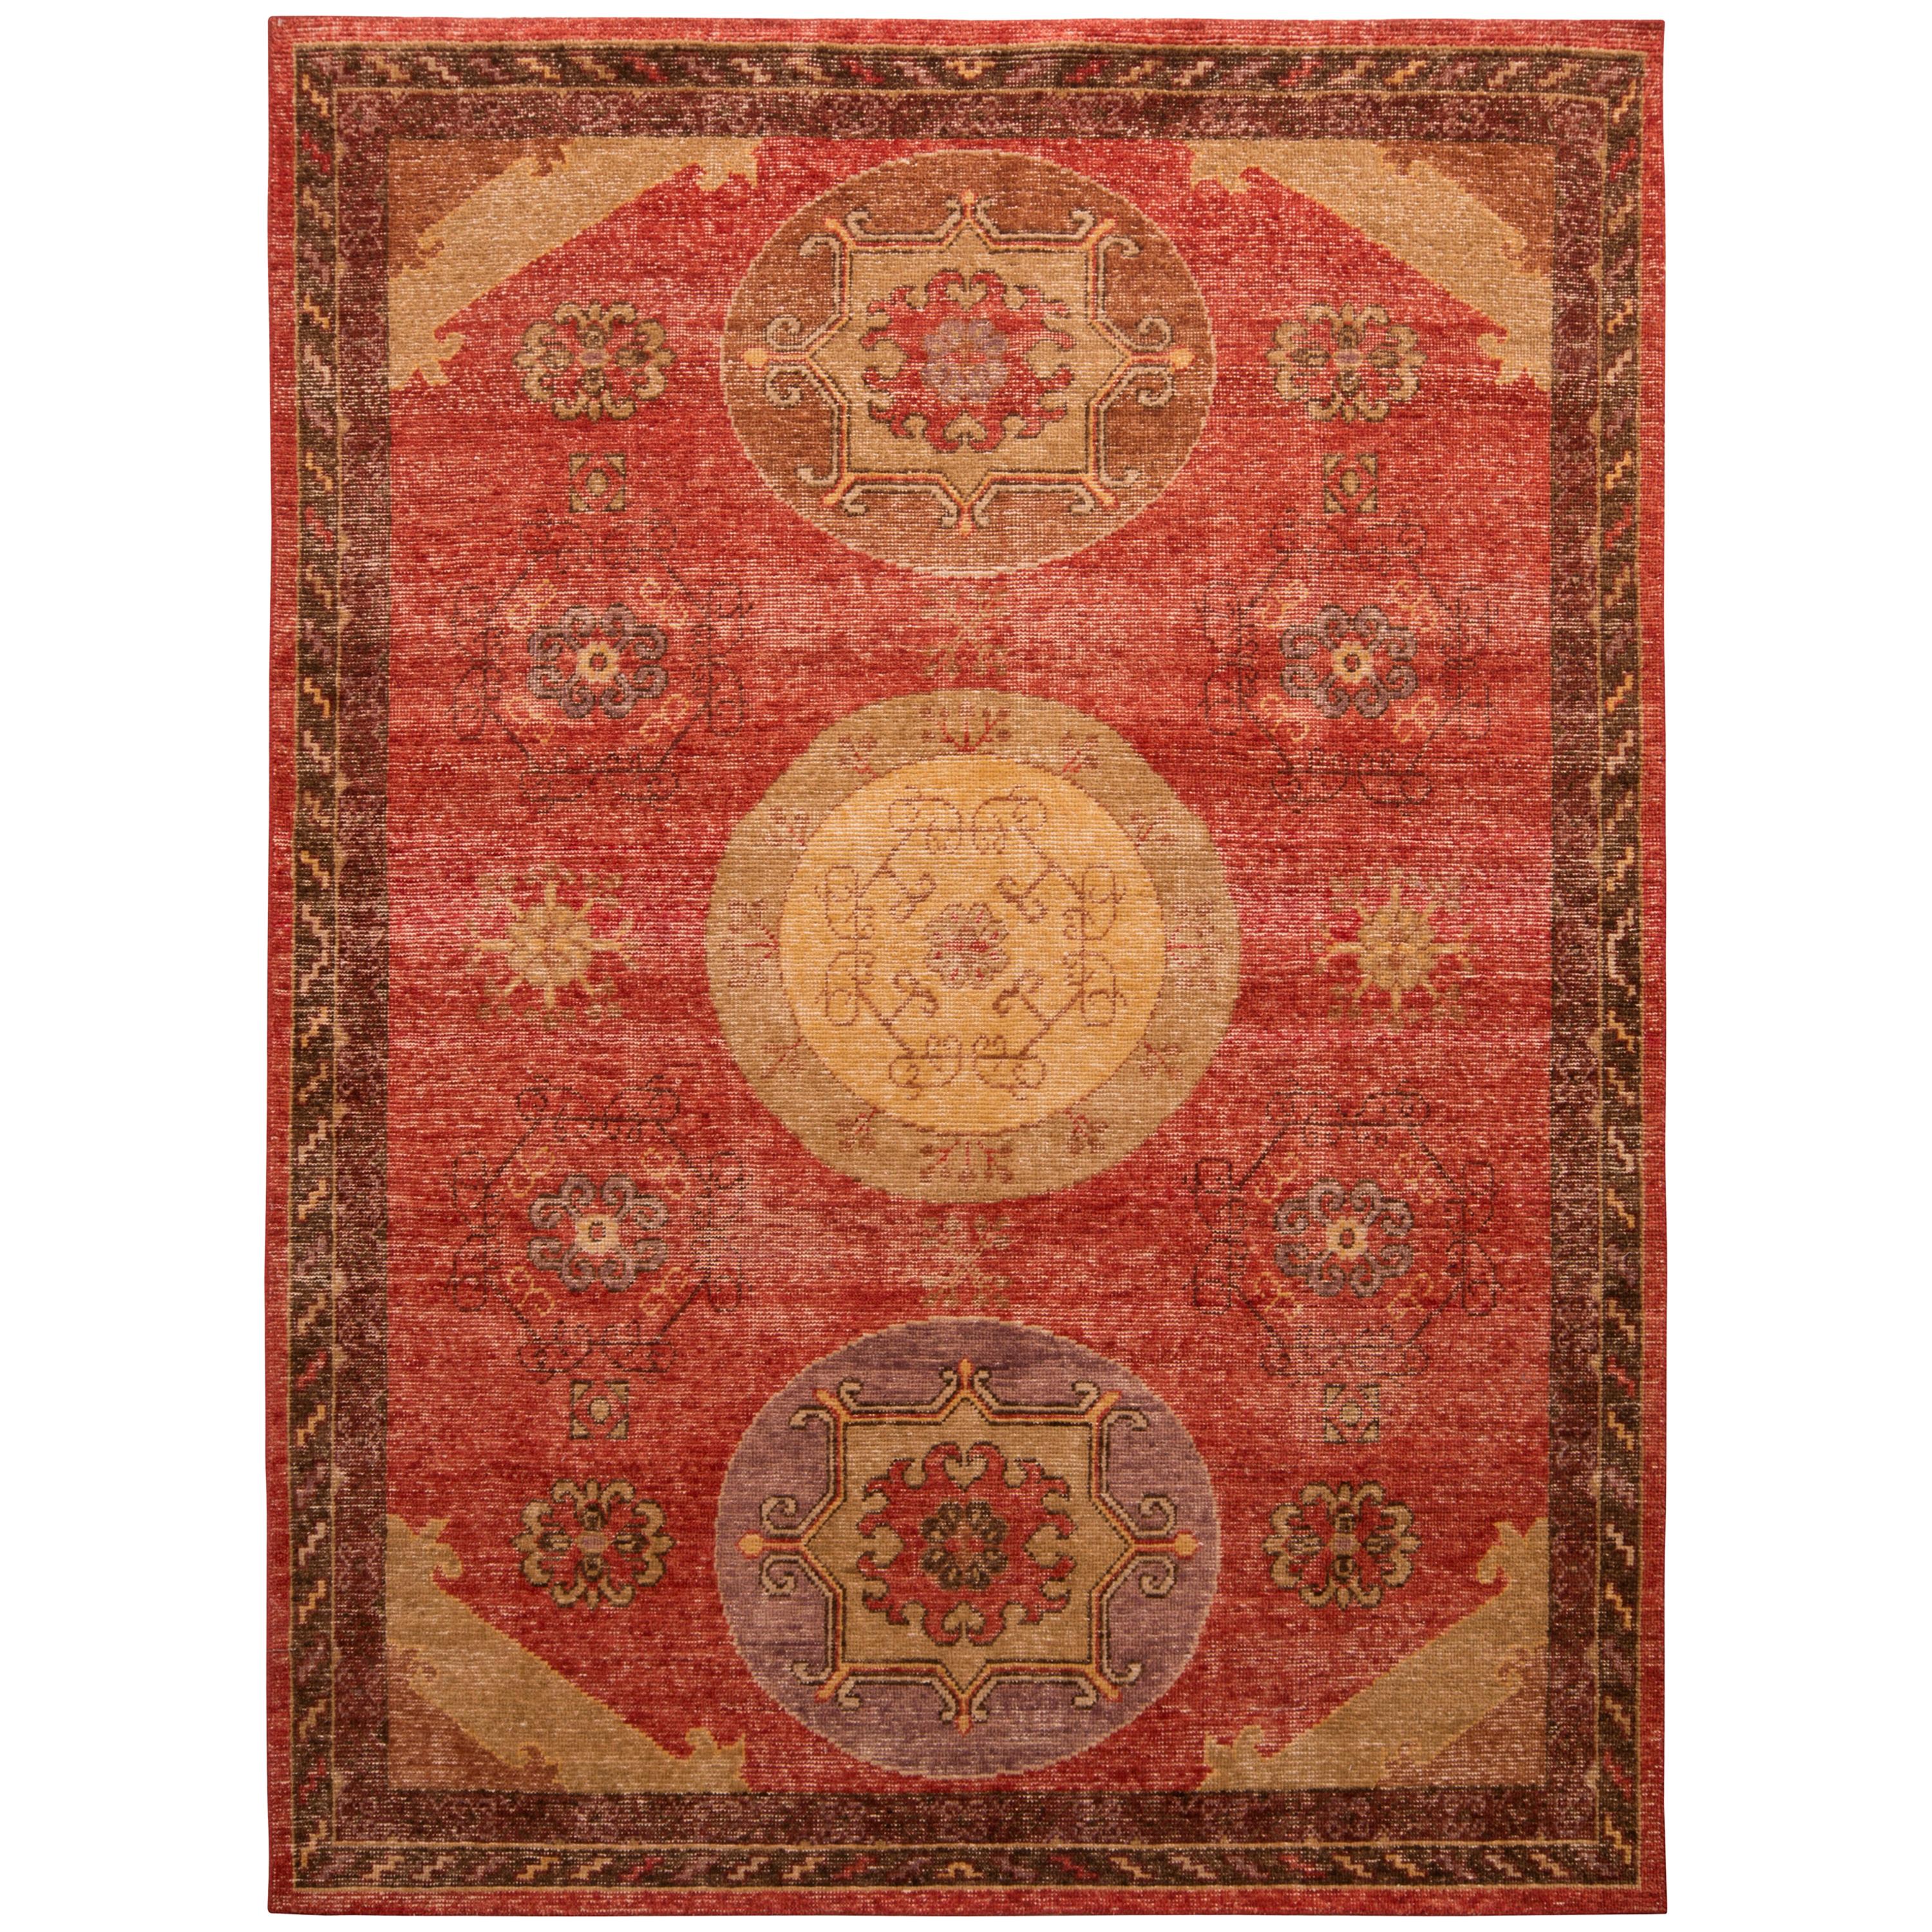 Teppich & Kelim-Teppich im Khotan-Stil in Rot und Beige mit Medaillonmuster